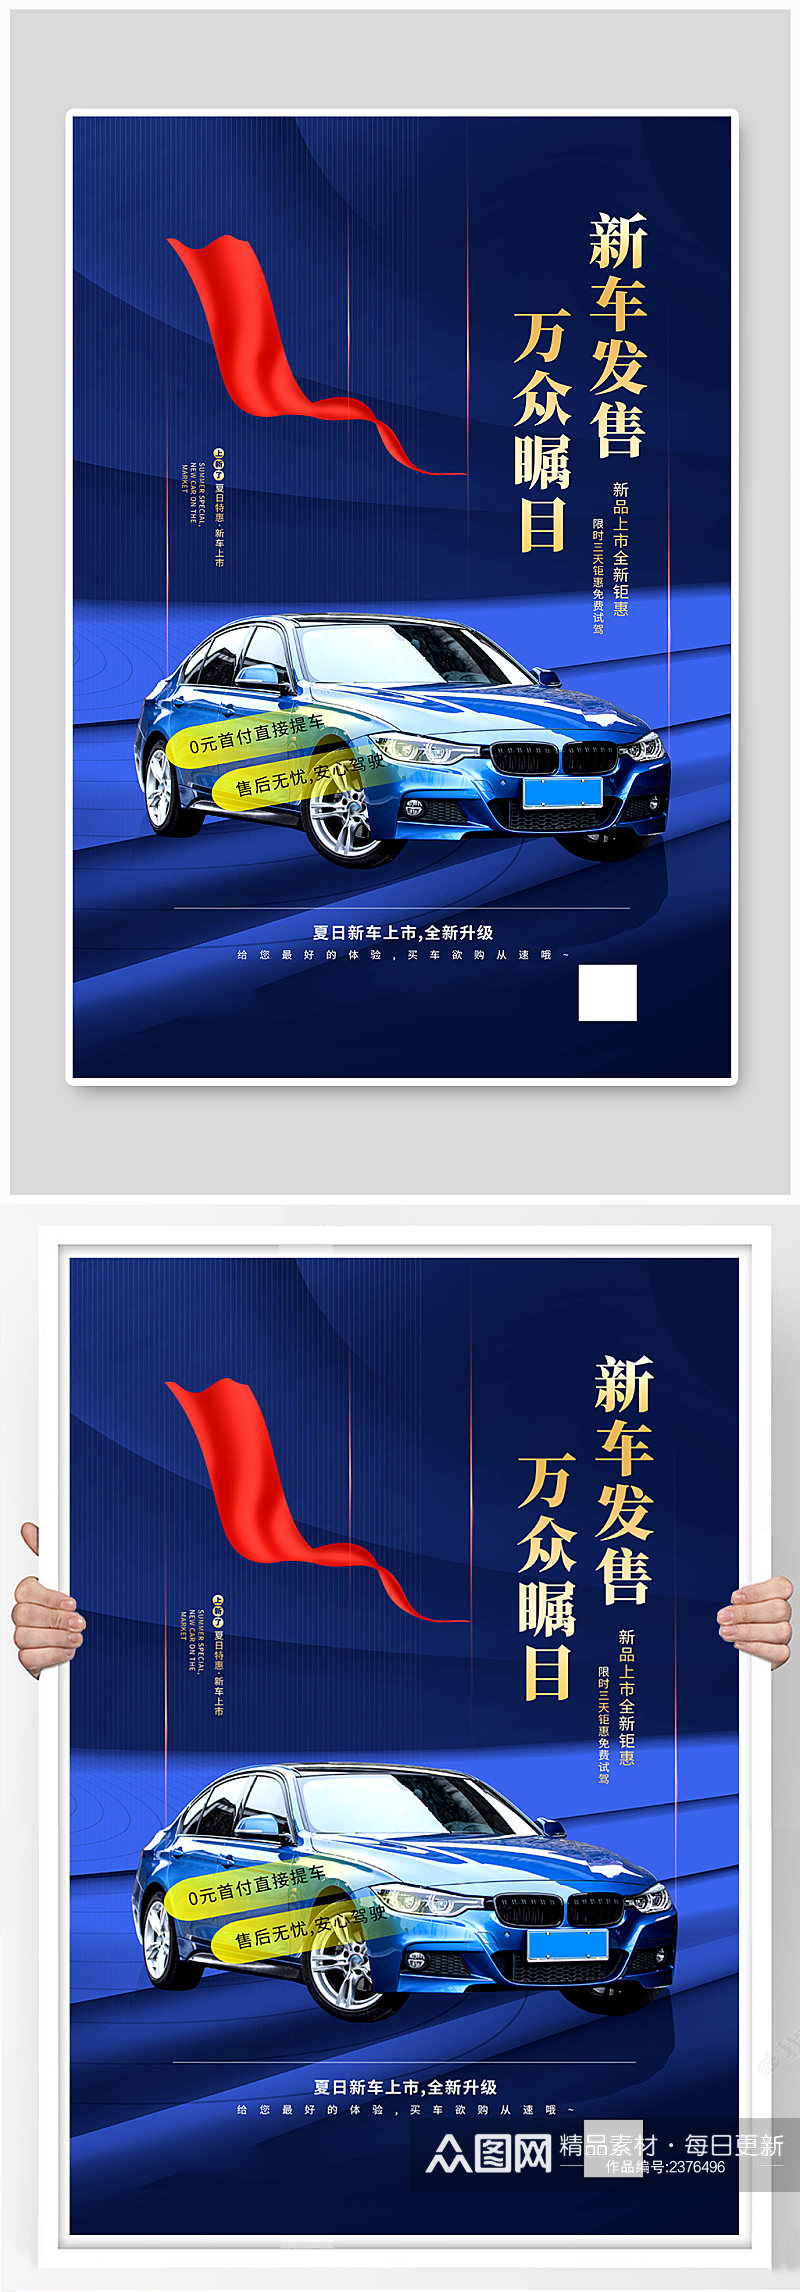 蓝色高端汽车营销海报素材